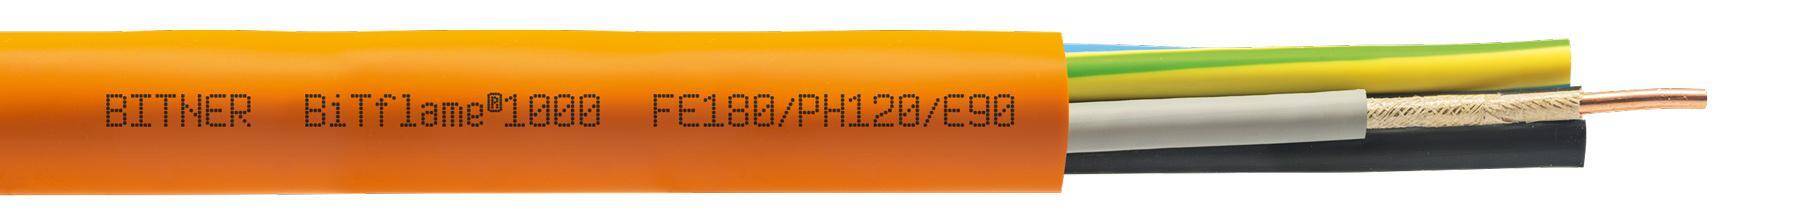 KABEL ENERGETYCZNY MIEDZIANY BEZHALOGENOWY OGNIOODPORNY 1x 120 0,6/1kV  (NHXH) PH120